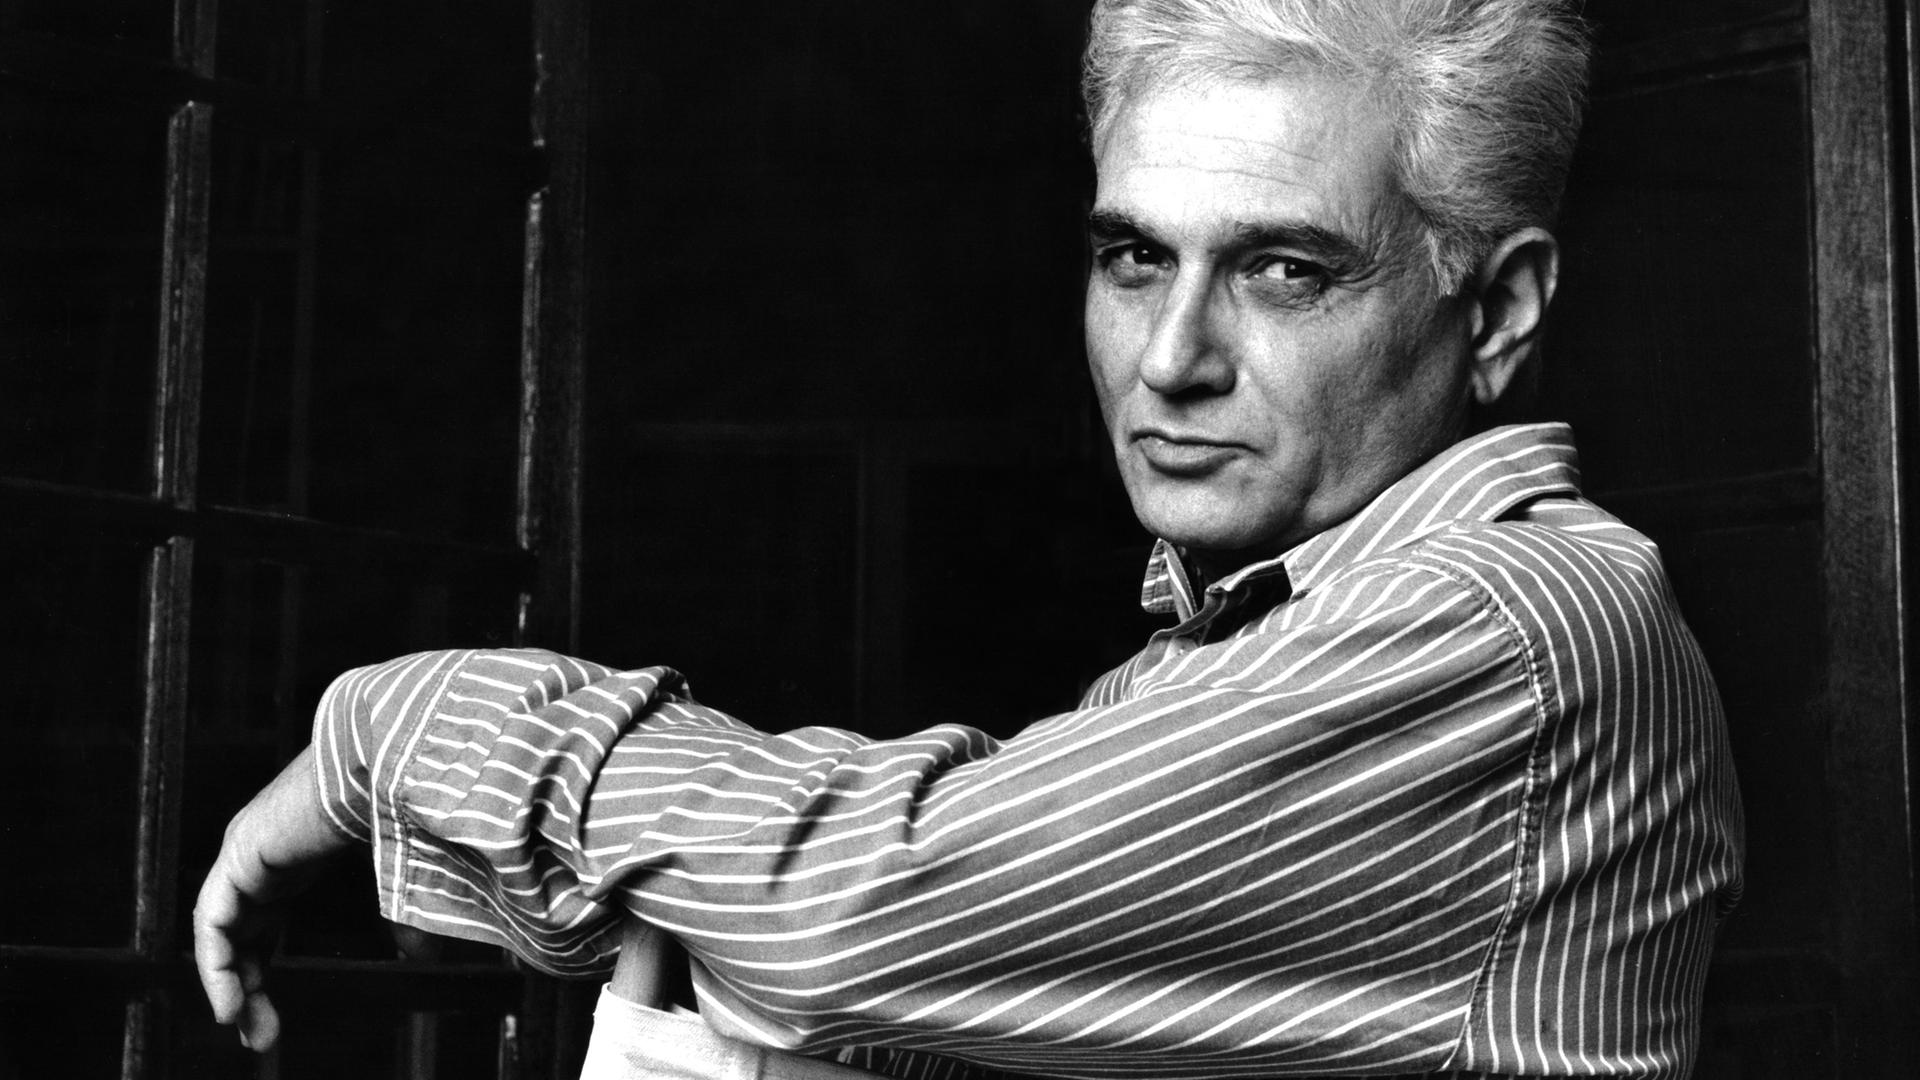 Porträt des französischen Philosophen Jacques Derrida, 1988.